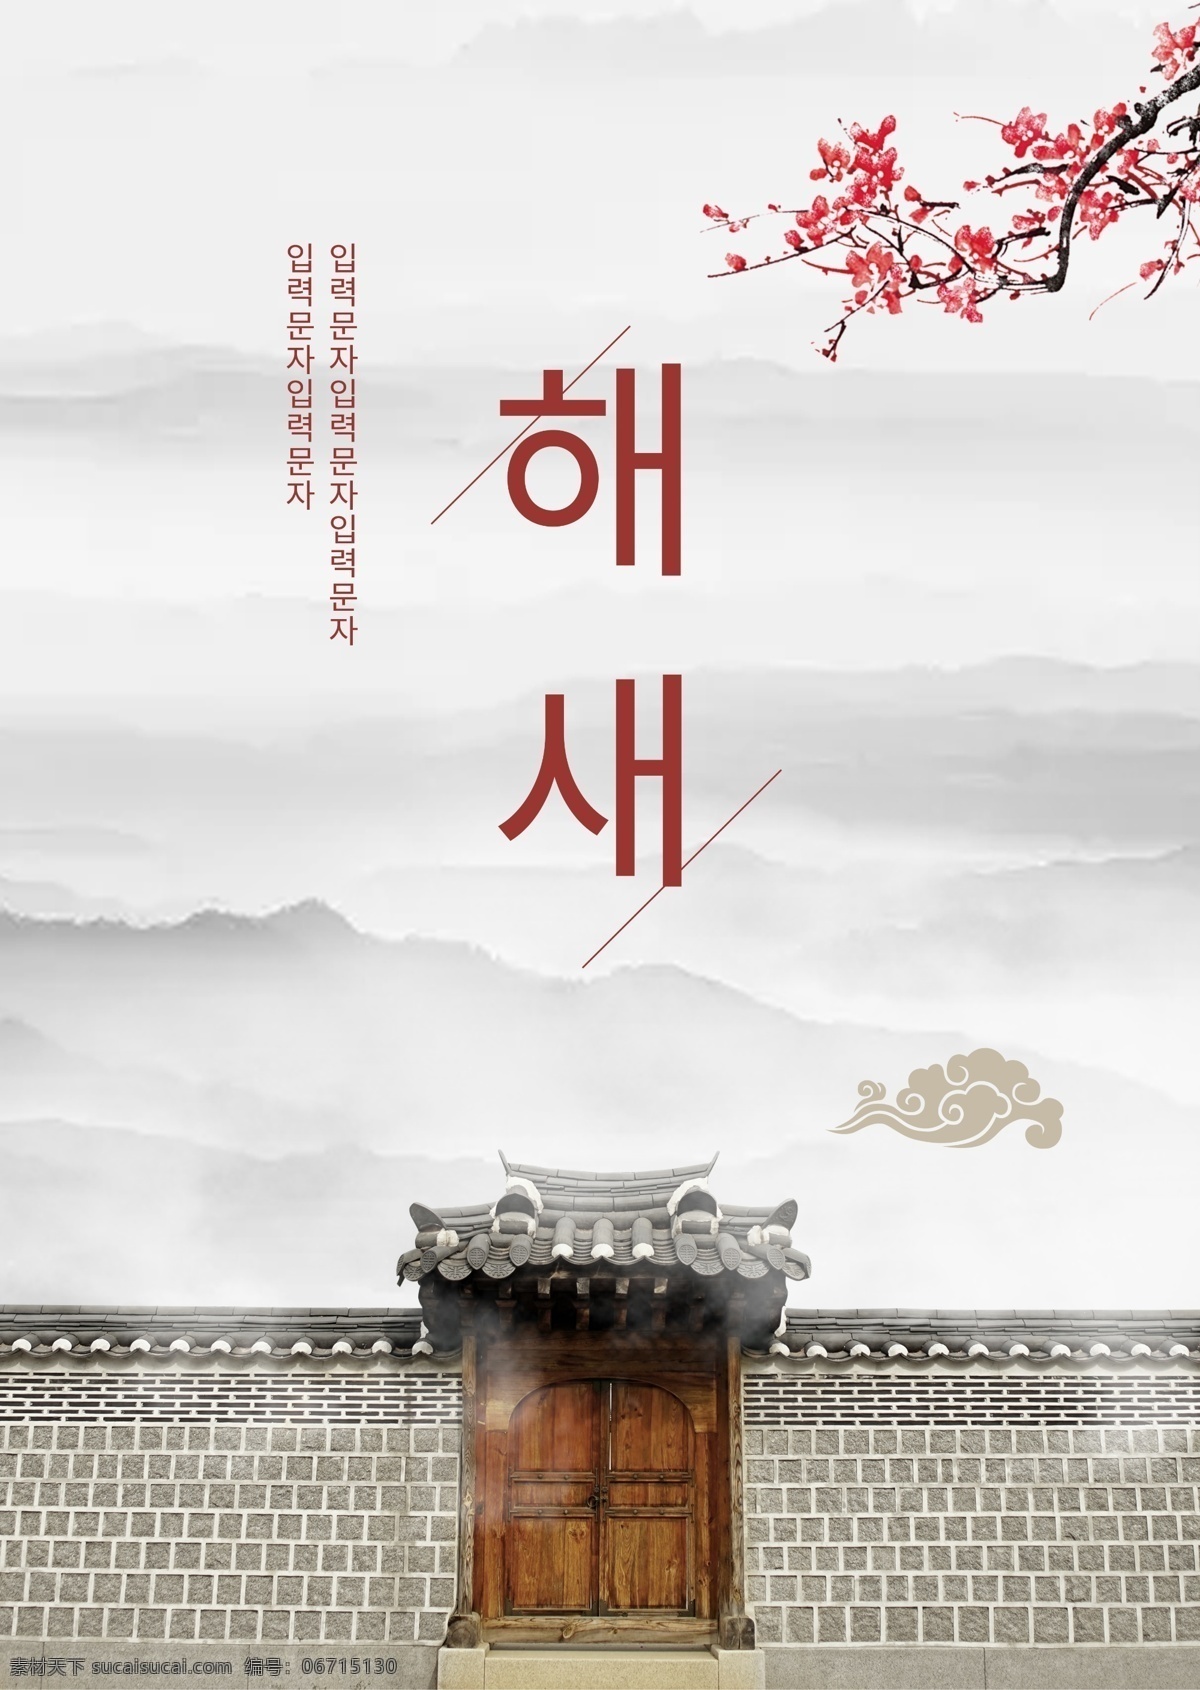 墨水 古典 韩国 新年 海报 墨 极简主义 朝鲜的 圈 白色 商标 团圆 宫 景观 打印 梅花